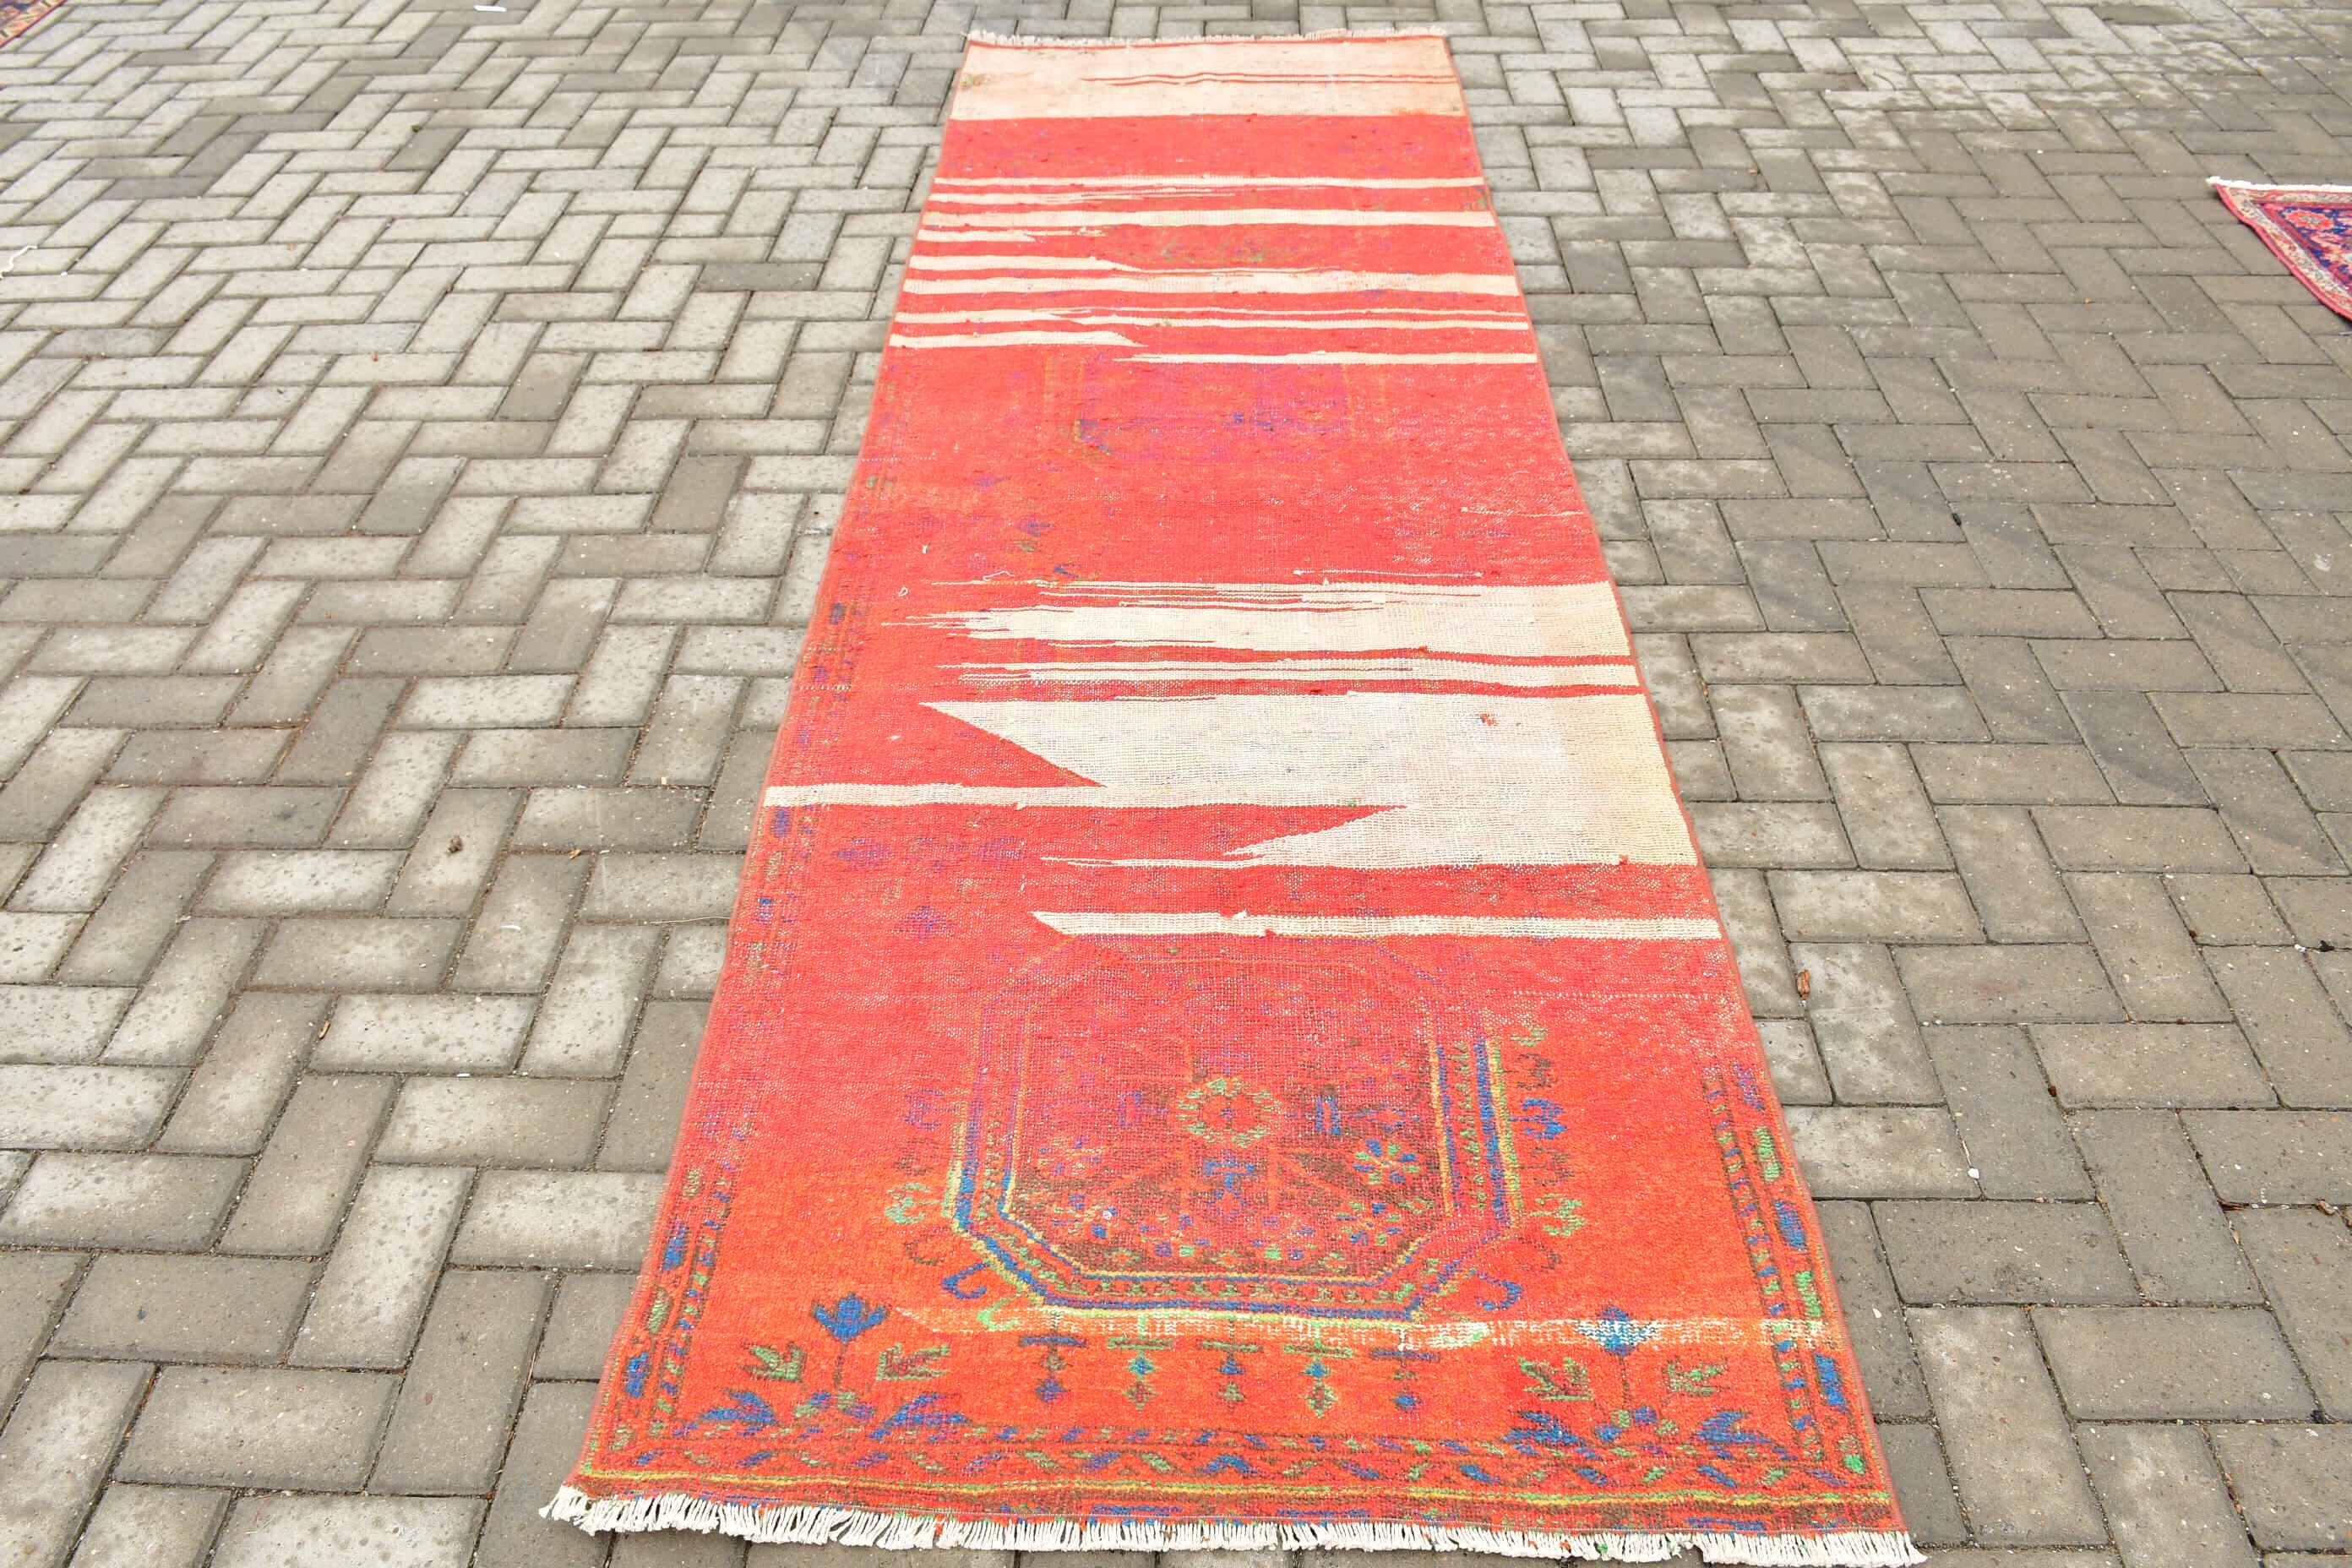 Red Moroccan Rugs, Rugs for Corridor, Art Rug, Vintage Rug, Wool Rug, Hallway Rug, Turkish Rug, 3.3x10.6 ft Runner Rug, Floor Rugs, Old Rug